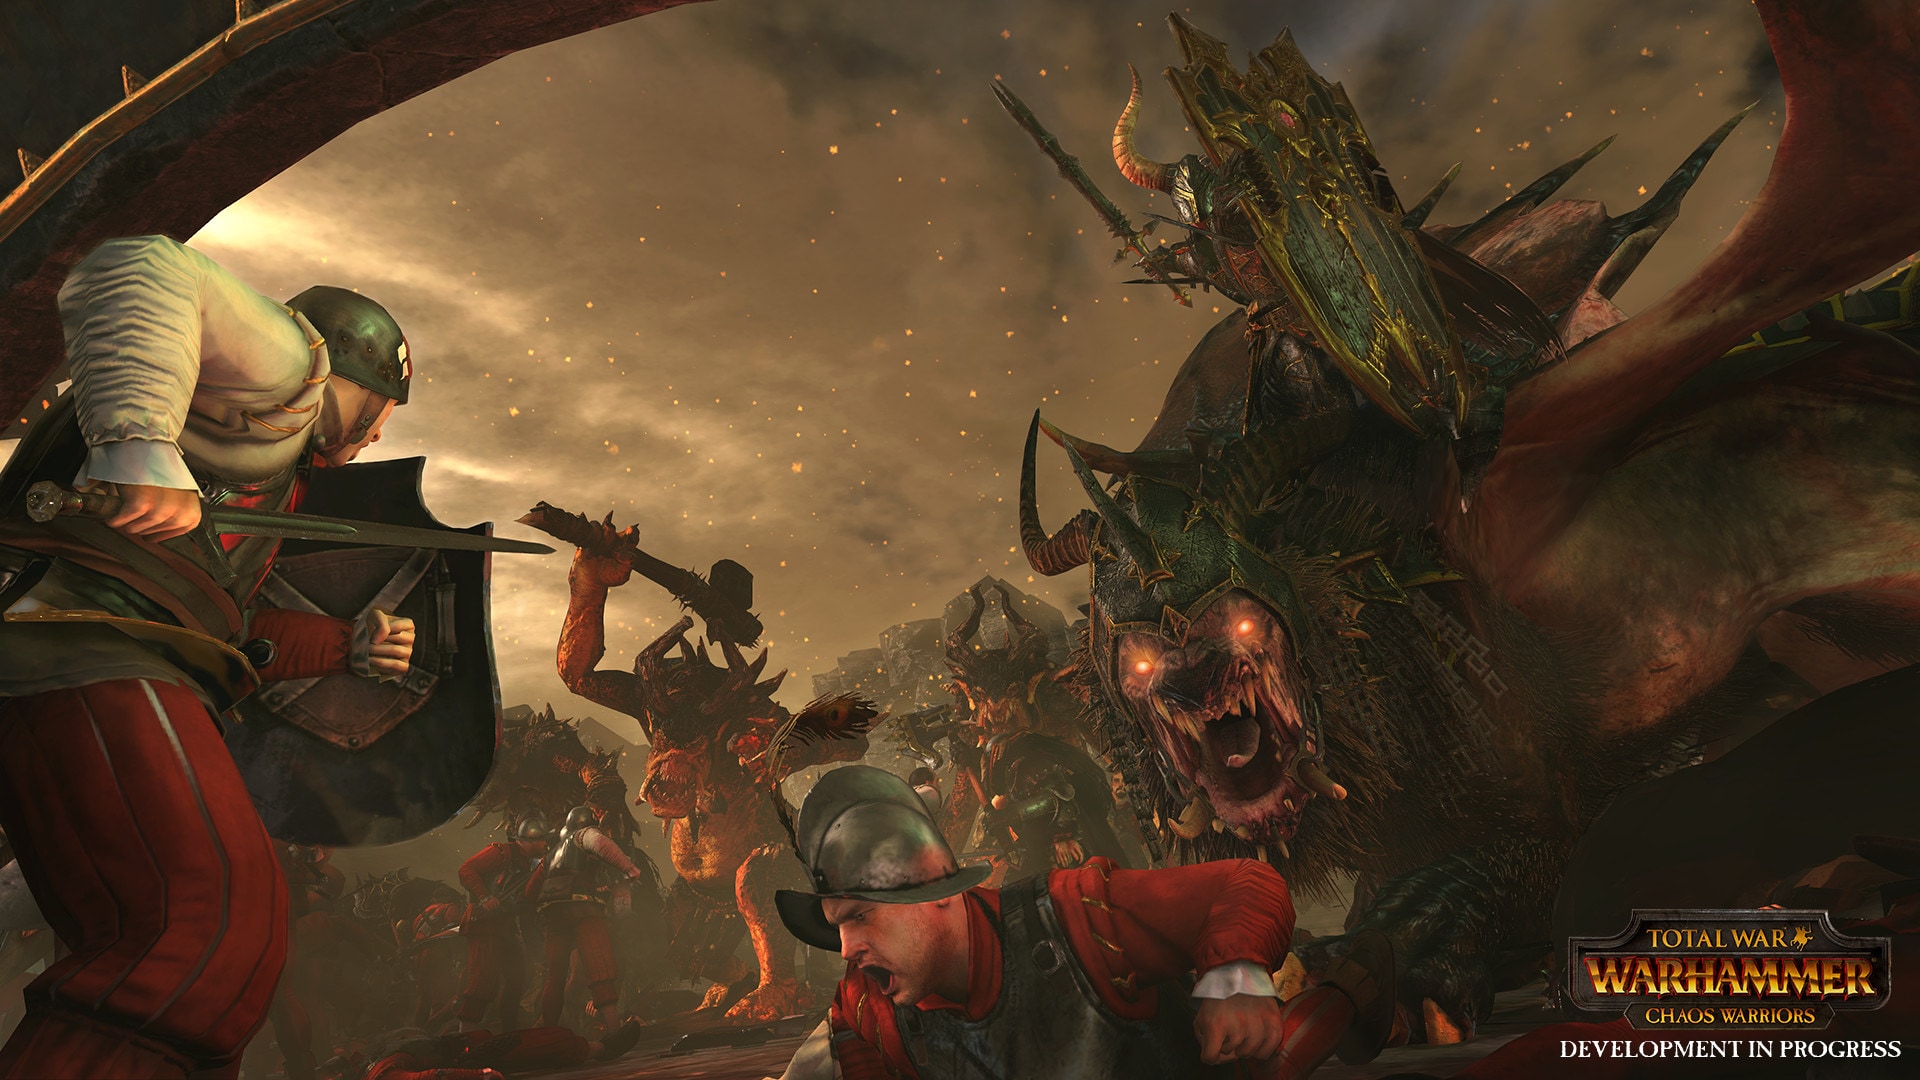 Total War: WARHAMMER - Chaos Warriors Race Pack (PC) - Steam Key - GLOBAL - 3